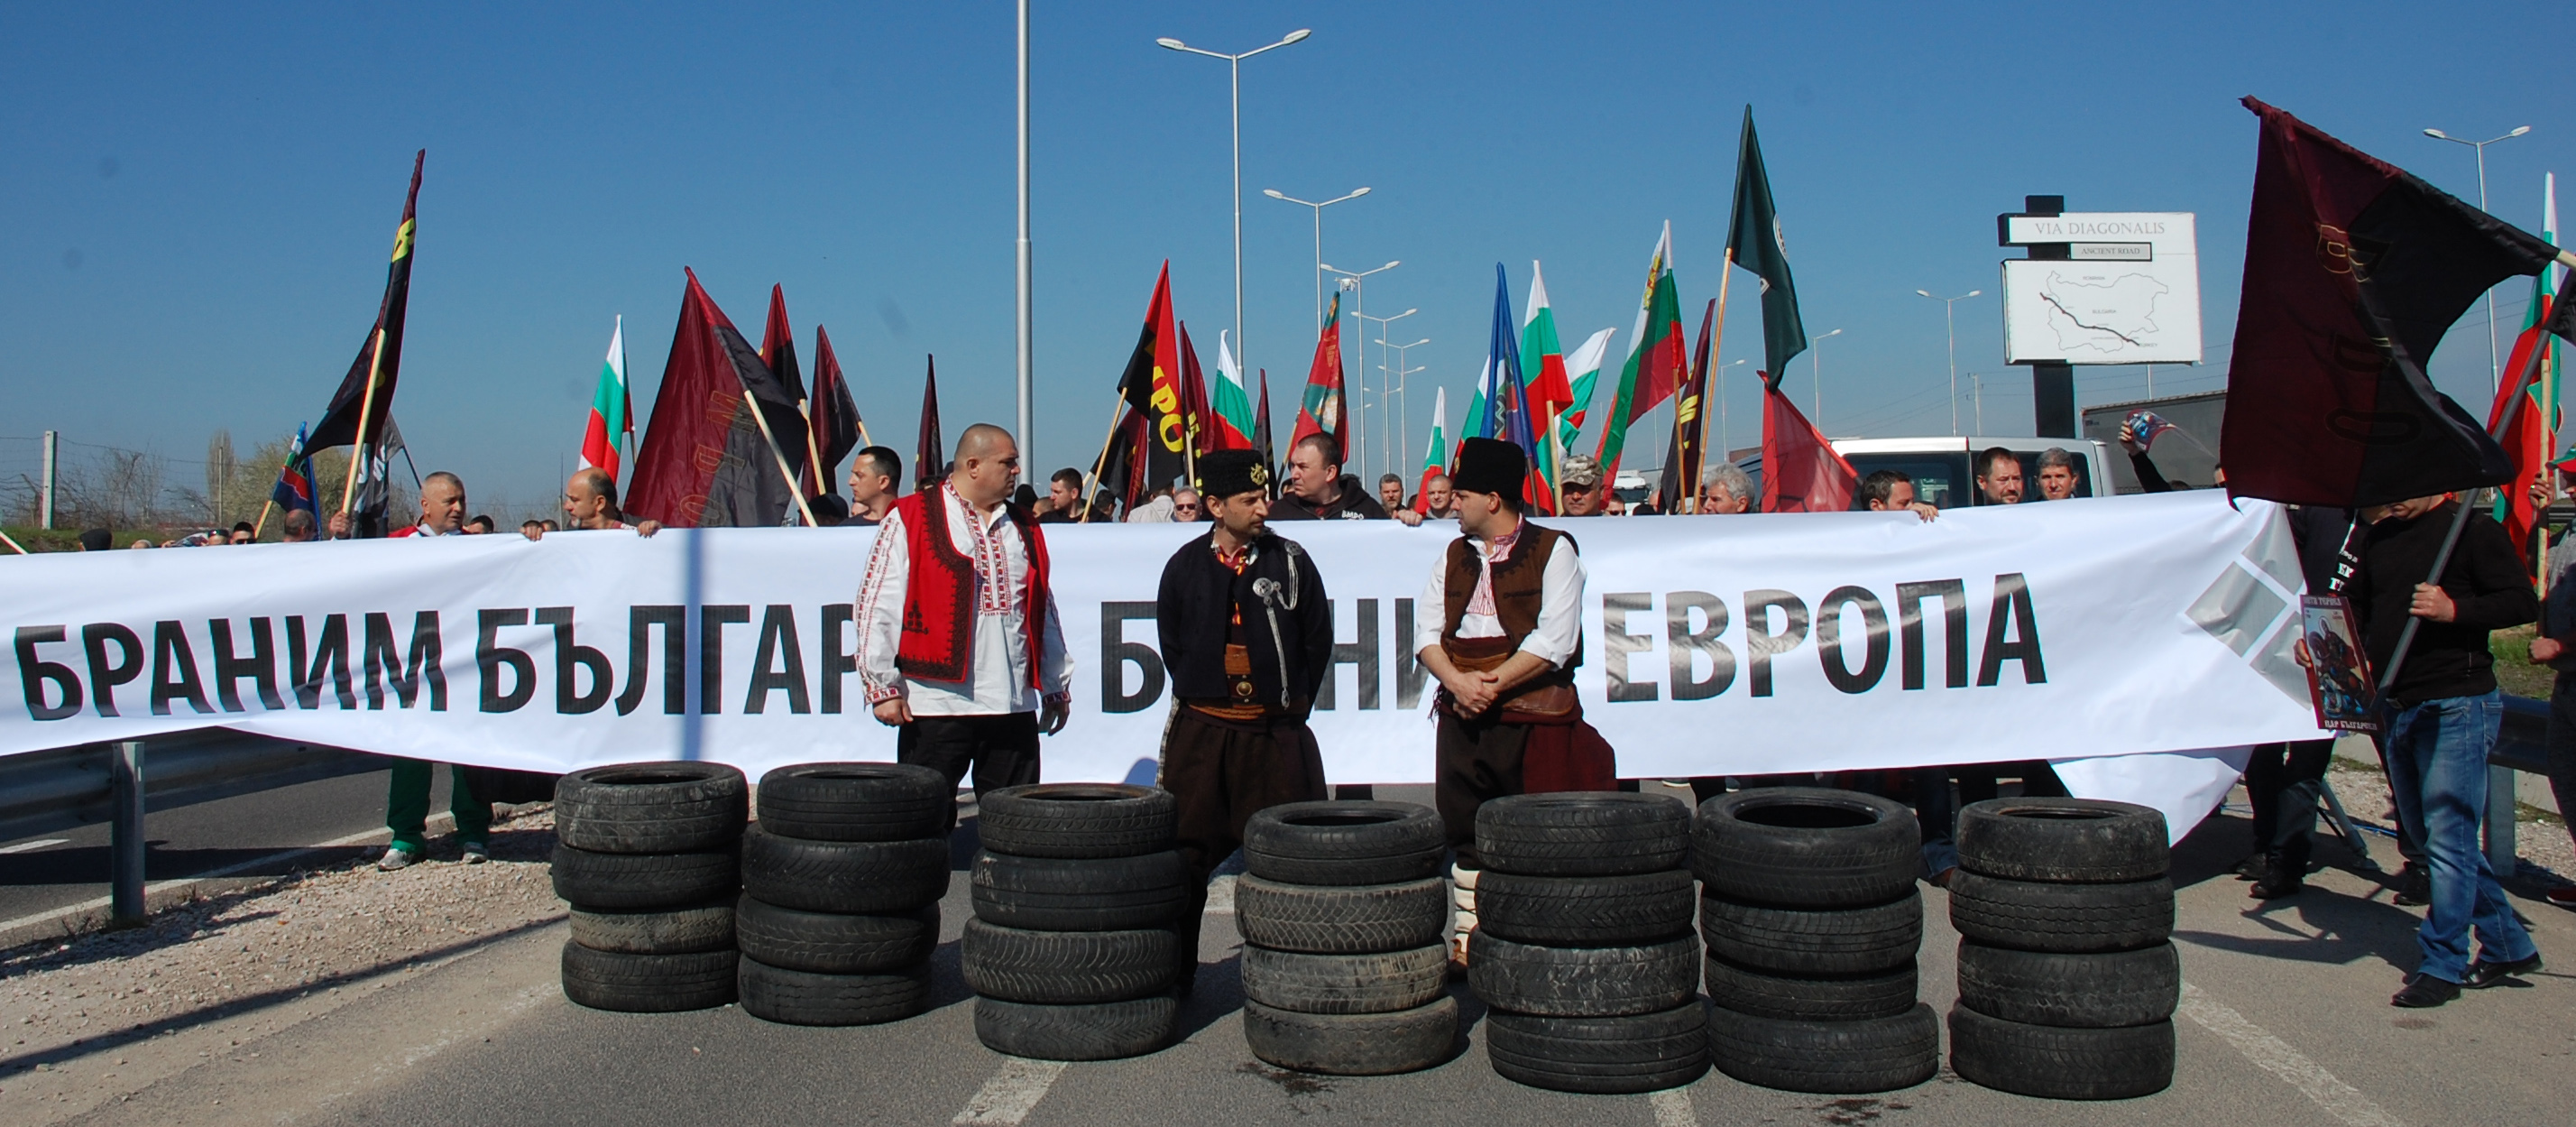 На 21 март представители на ”Обединени патриоти” затвориха граничния пункт Капитан Андреево от Турция към България